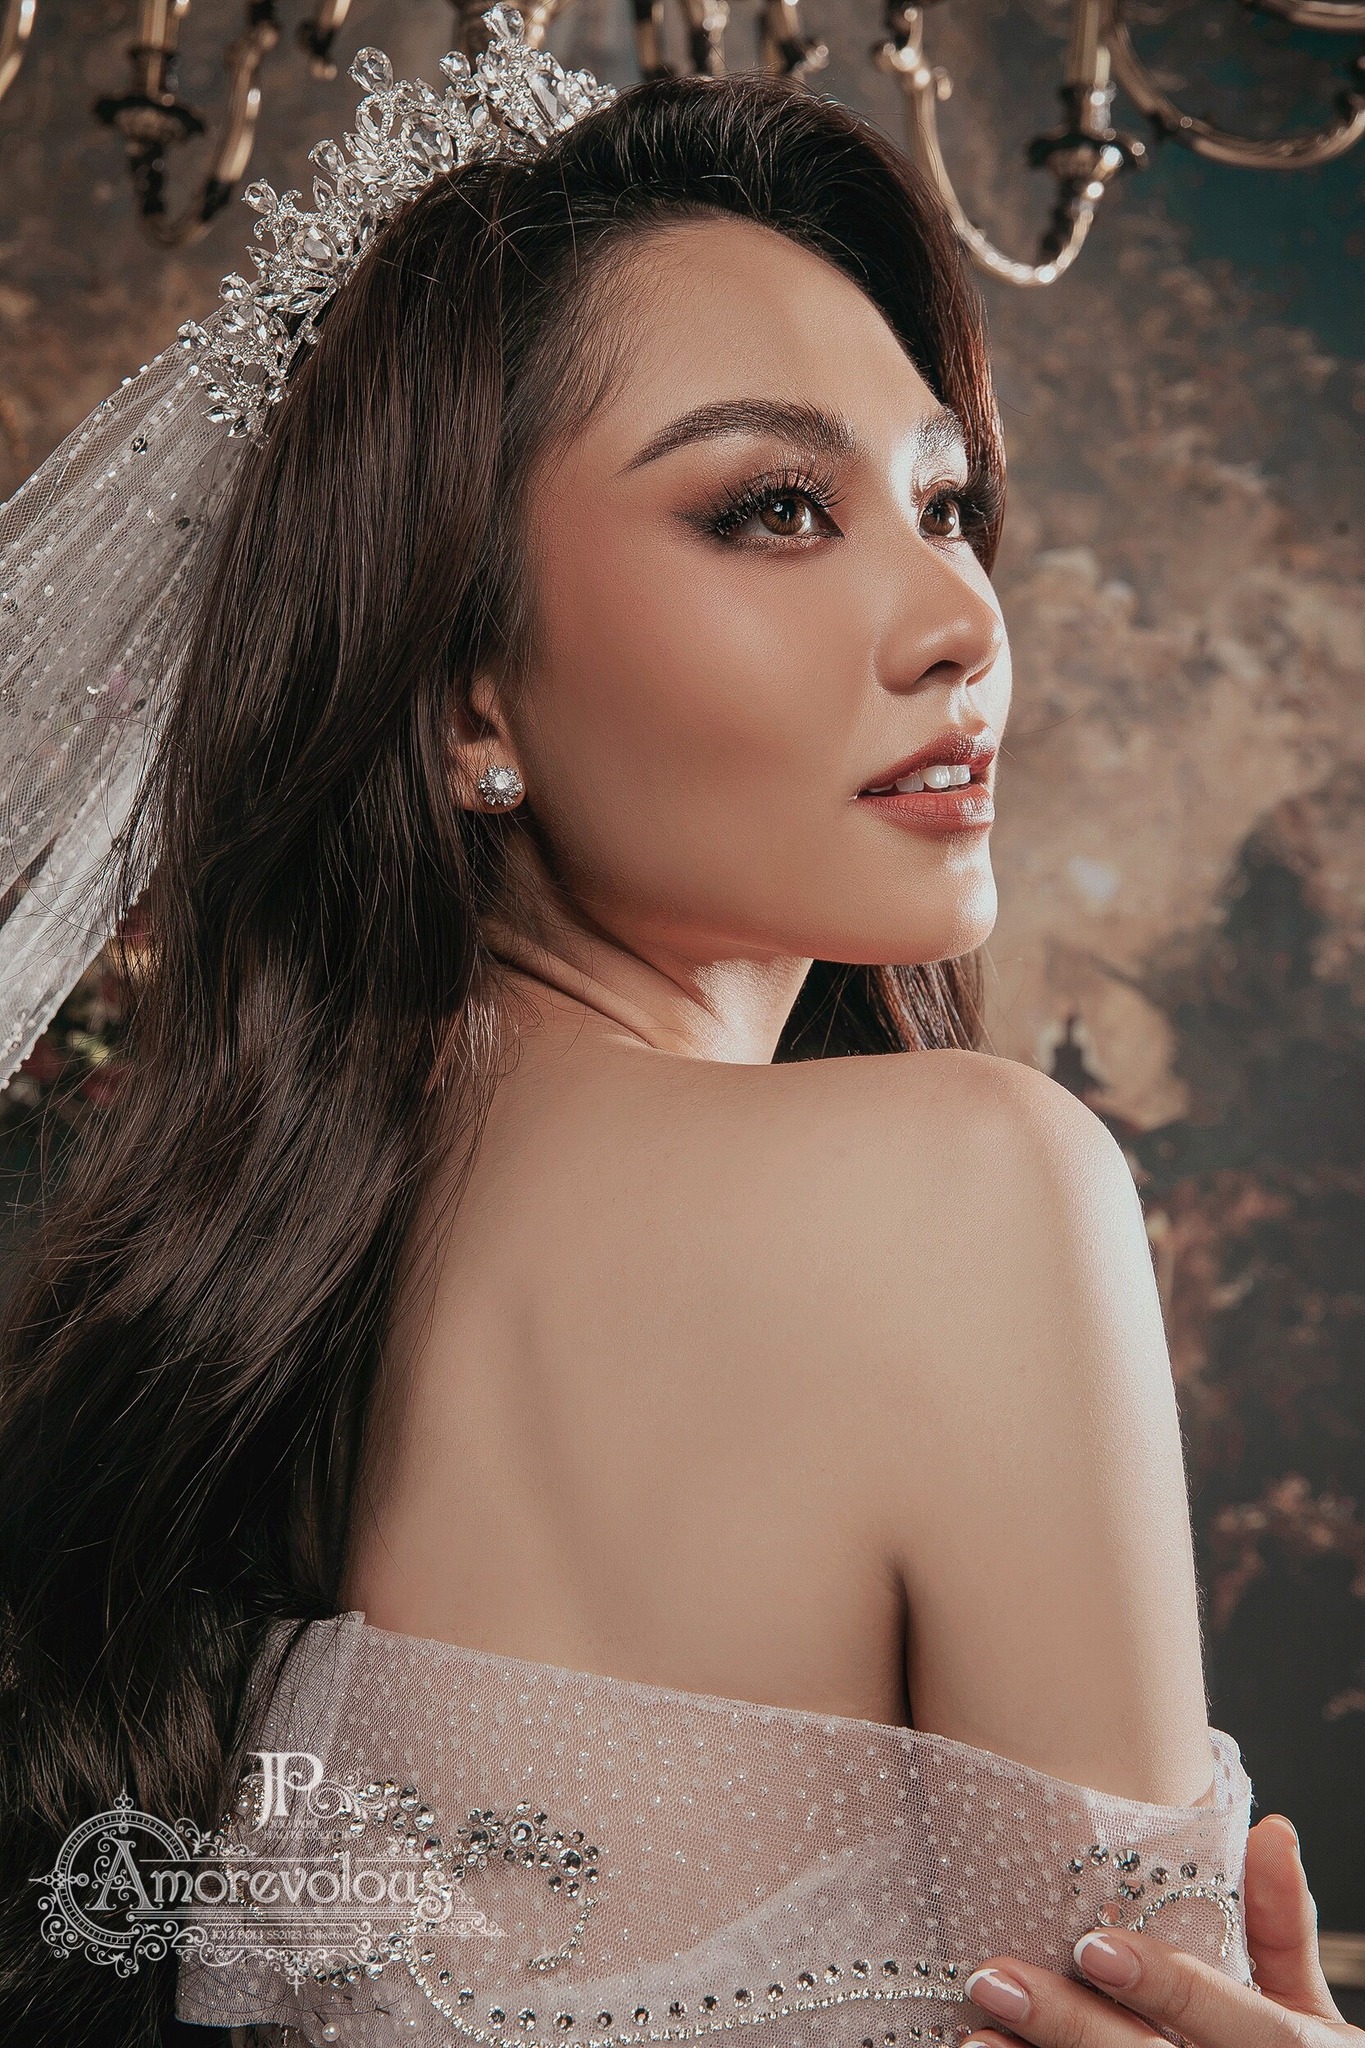 Hoa hậu Mai Phương lộng lẫy, kiêu sa trong trang phục váy cưới - Ảnh 1.